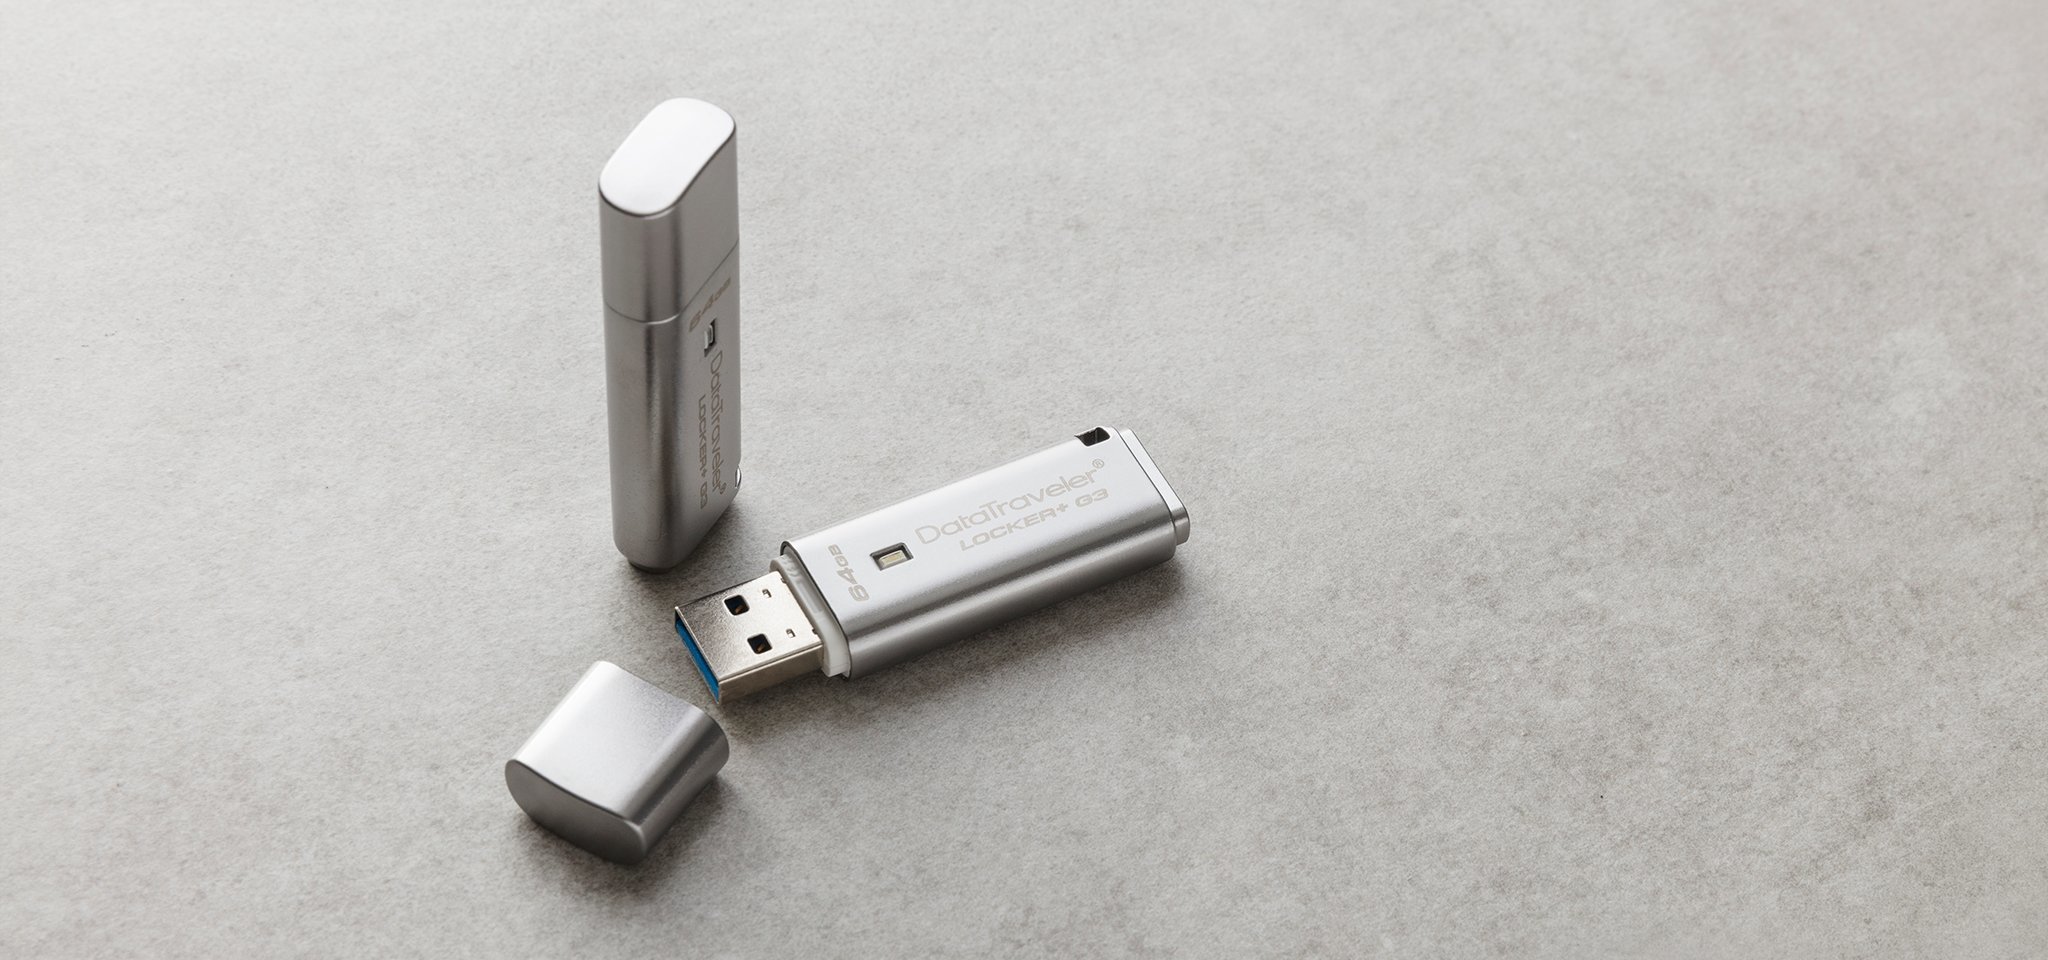 Pamięć Kingston 32GB DataTraveler Locker+ G3 USB 3.0 135MB/s DTLPG3/32GB szary widok od przodu na dwa produkty, jeden pendrive ze zdjętą osłoną portu